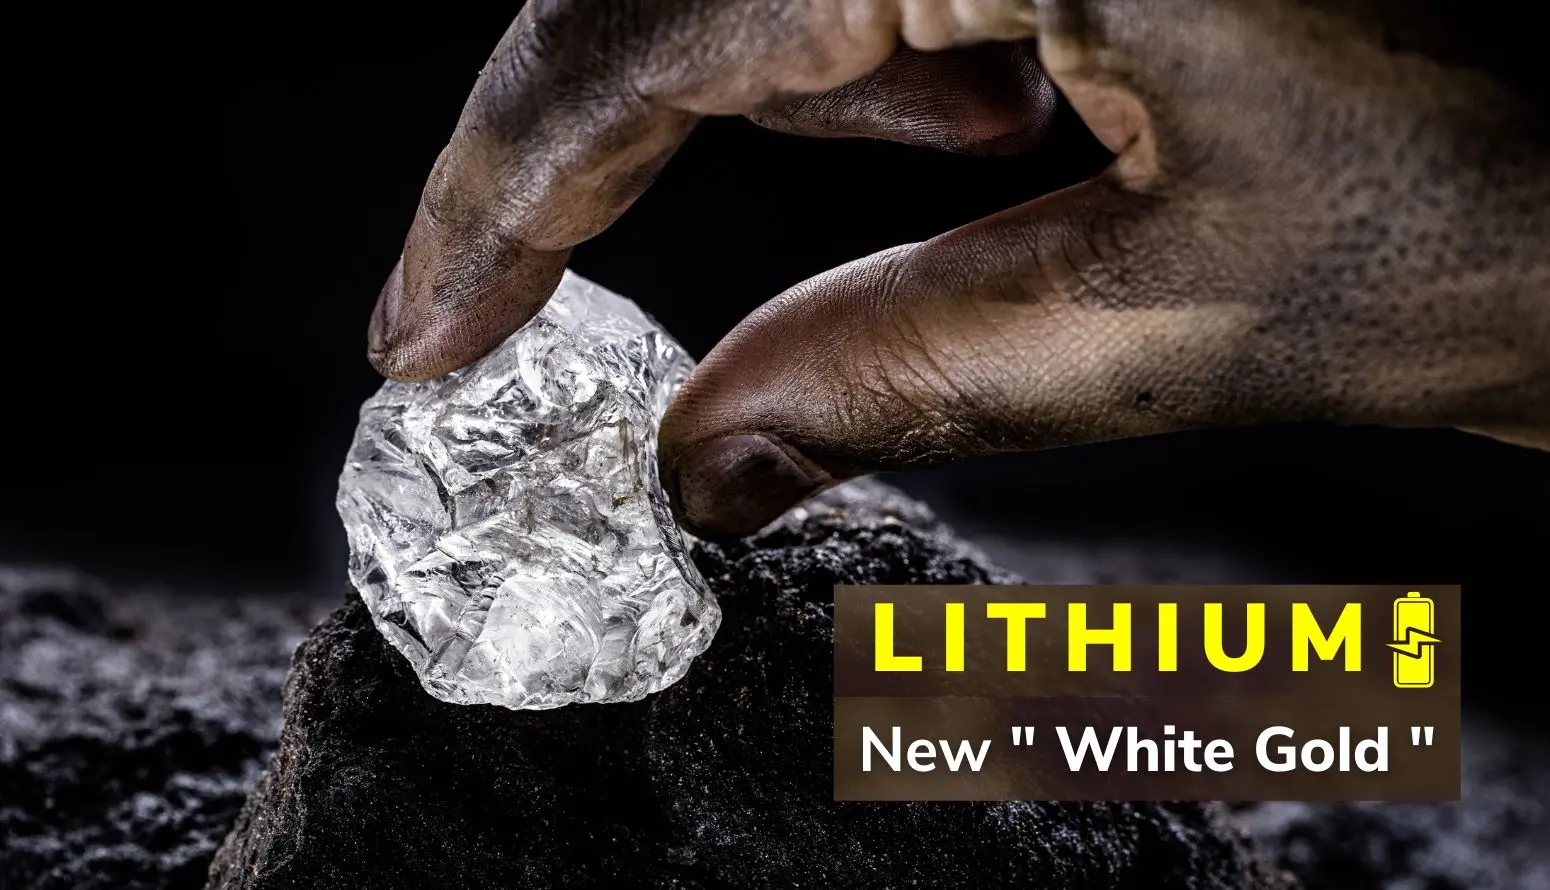 litiu lhitium gold white gold